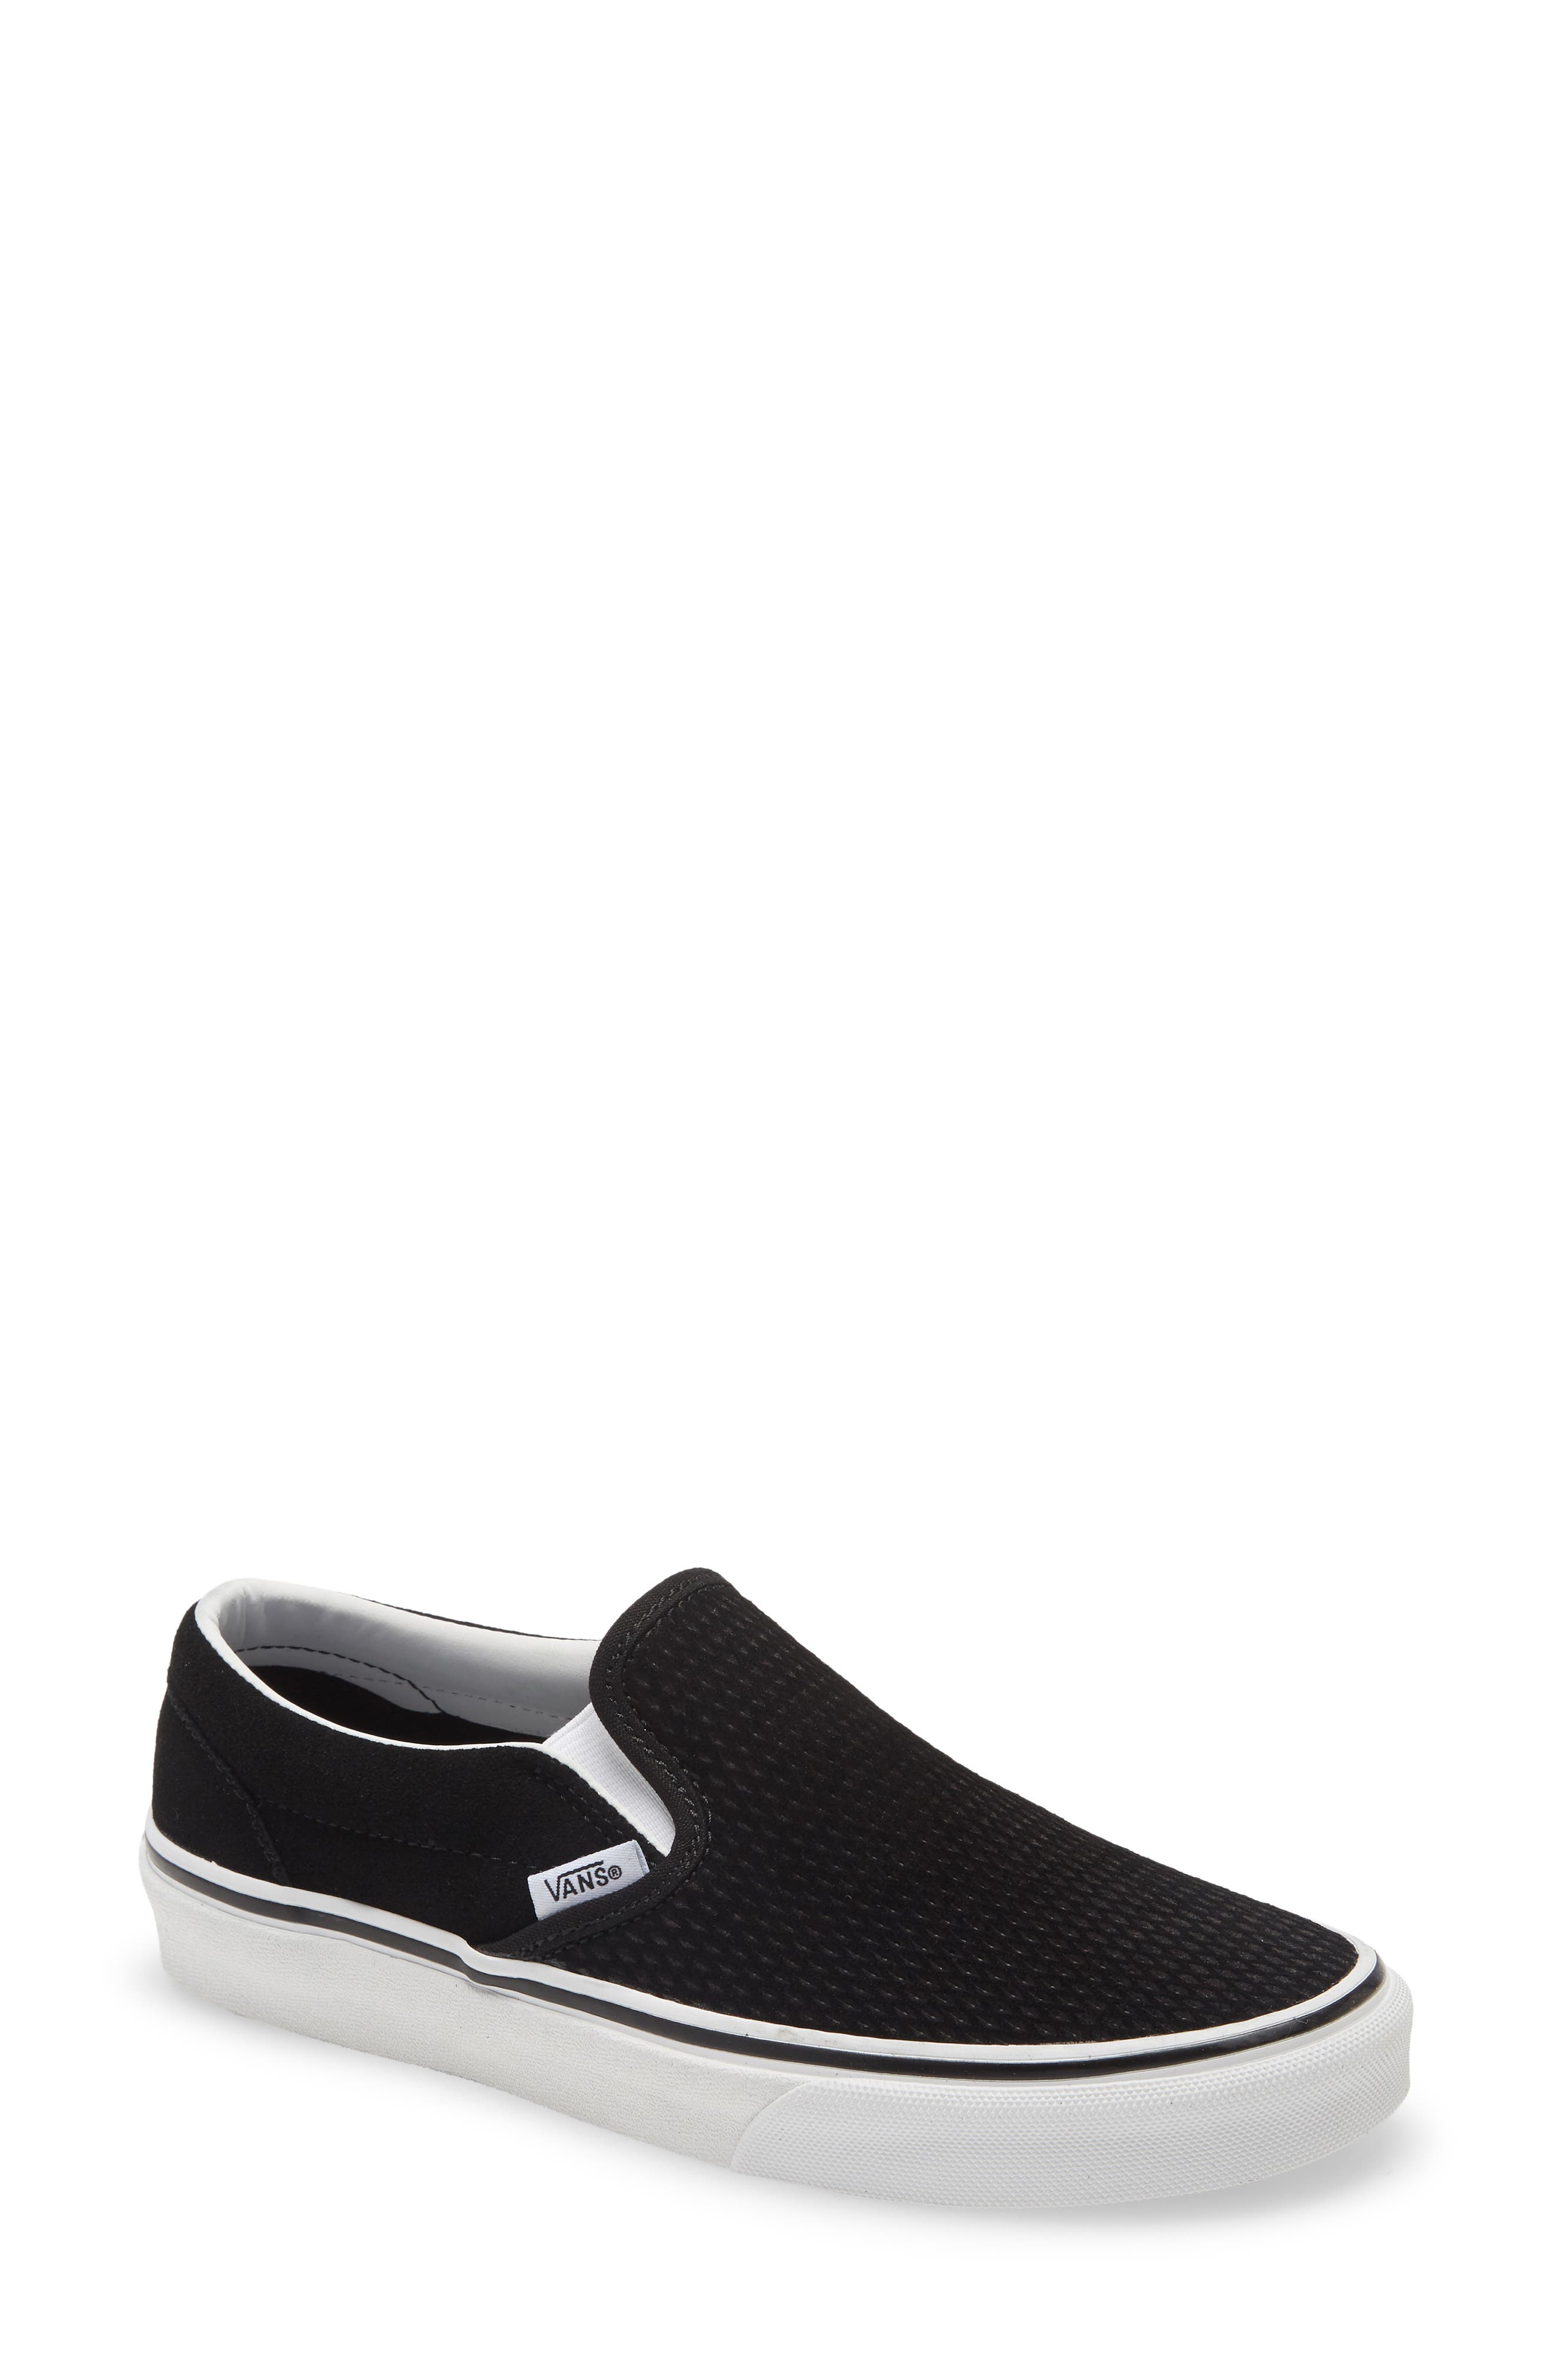 Vans Classic Slip-On Sneaker (Unisex 